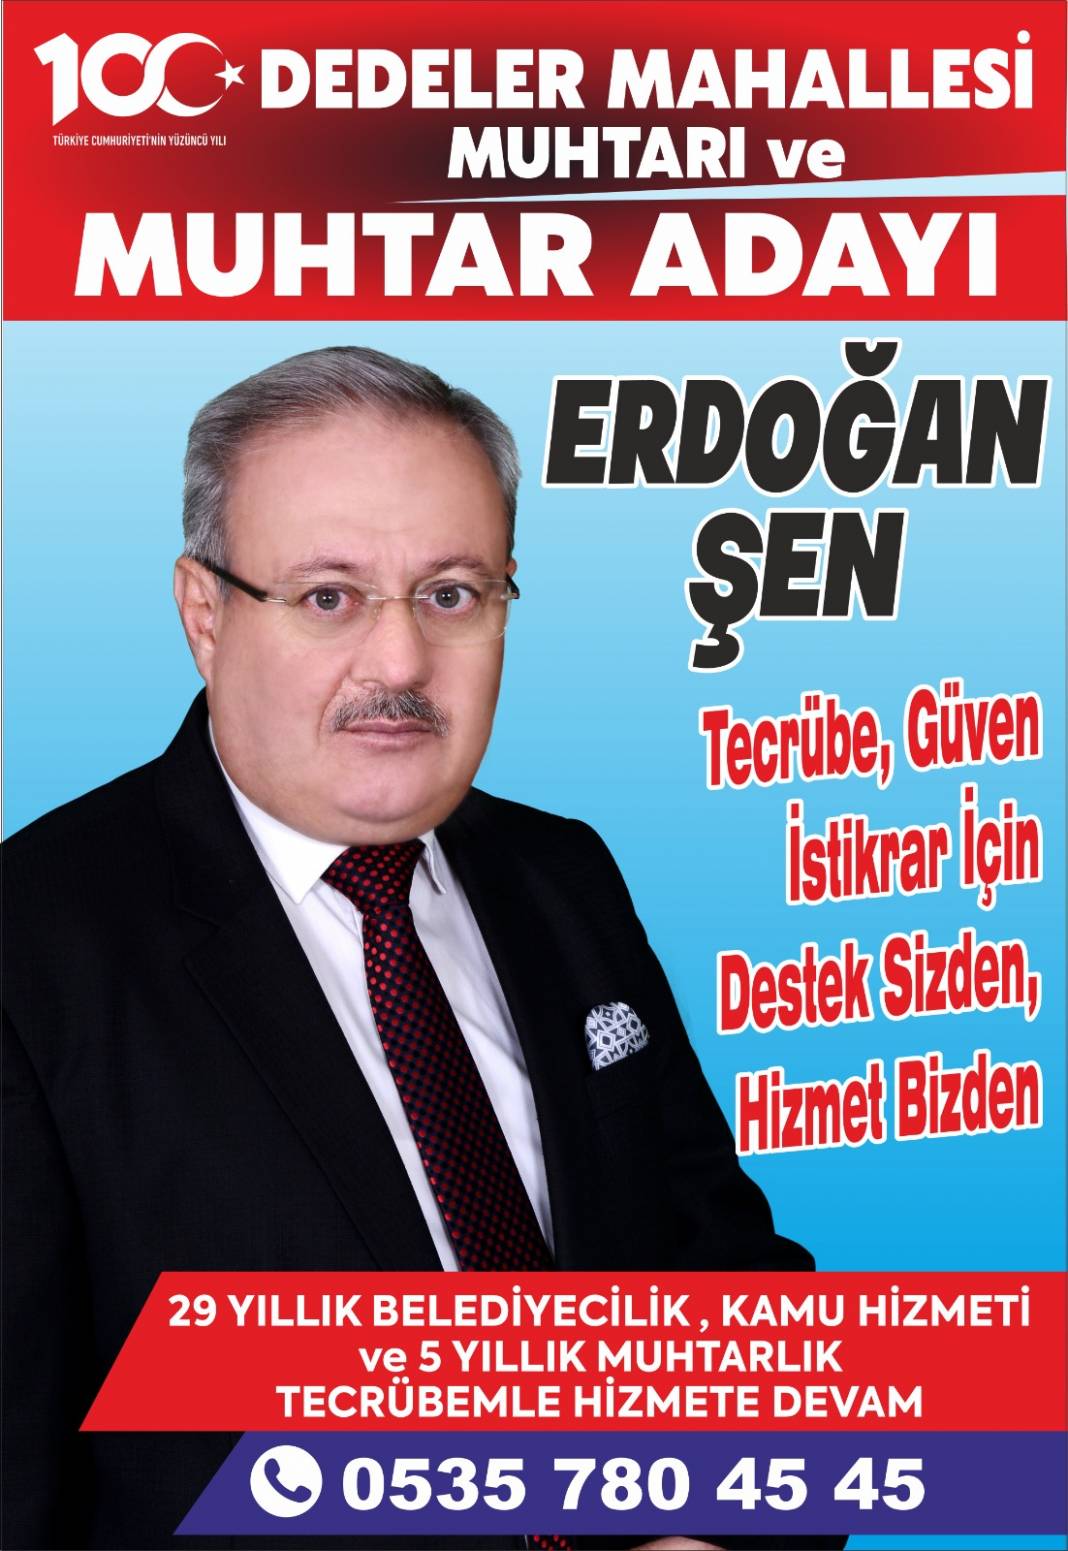 Konya’nın muhtar adayları Haber Dairesi’nde 50